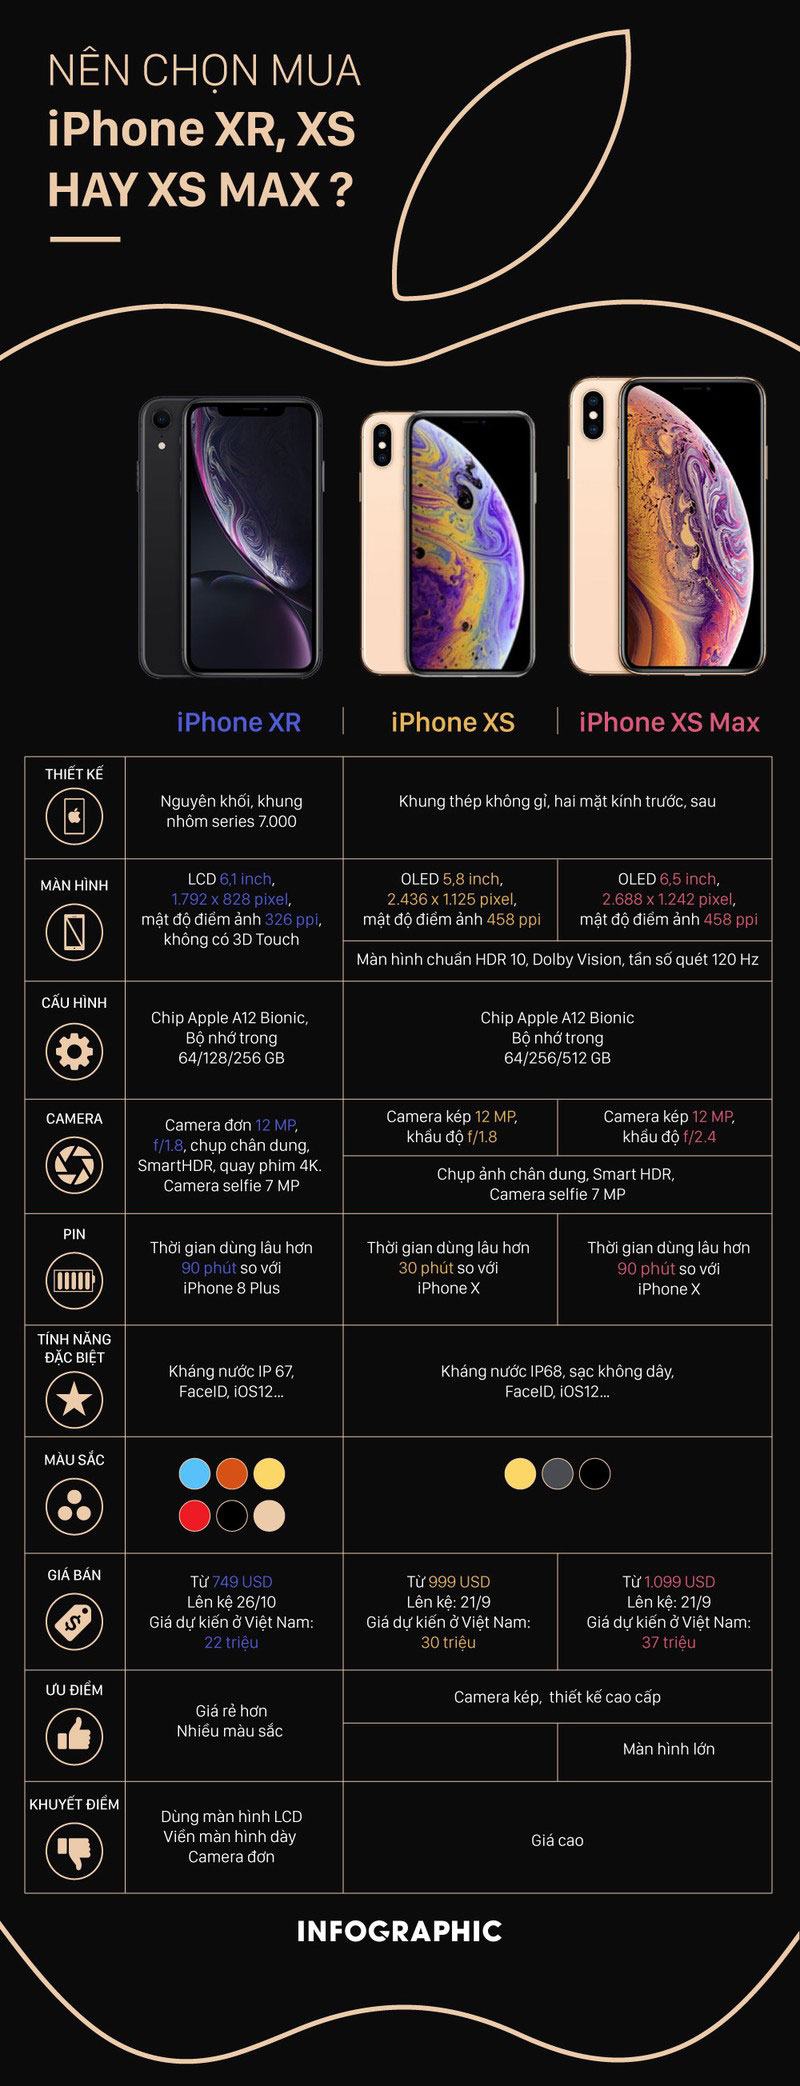 iPhone XR hay XS, XS MAX: Được chọn 1 thì bạn sẽ mua cái nào?